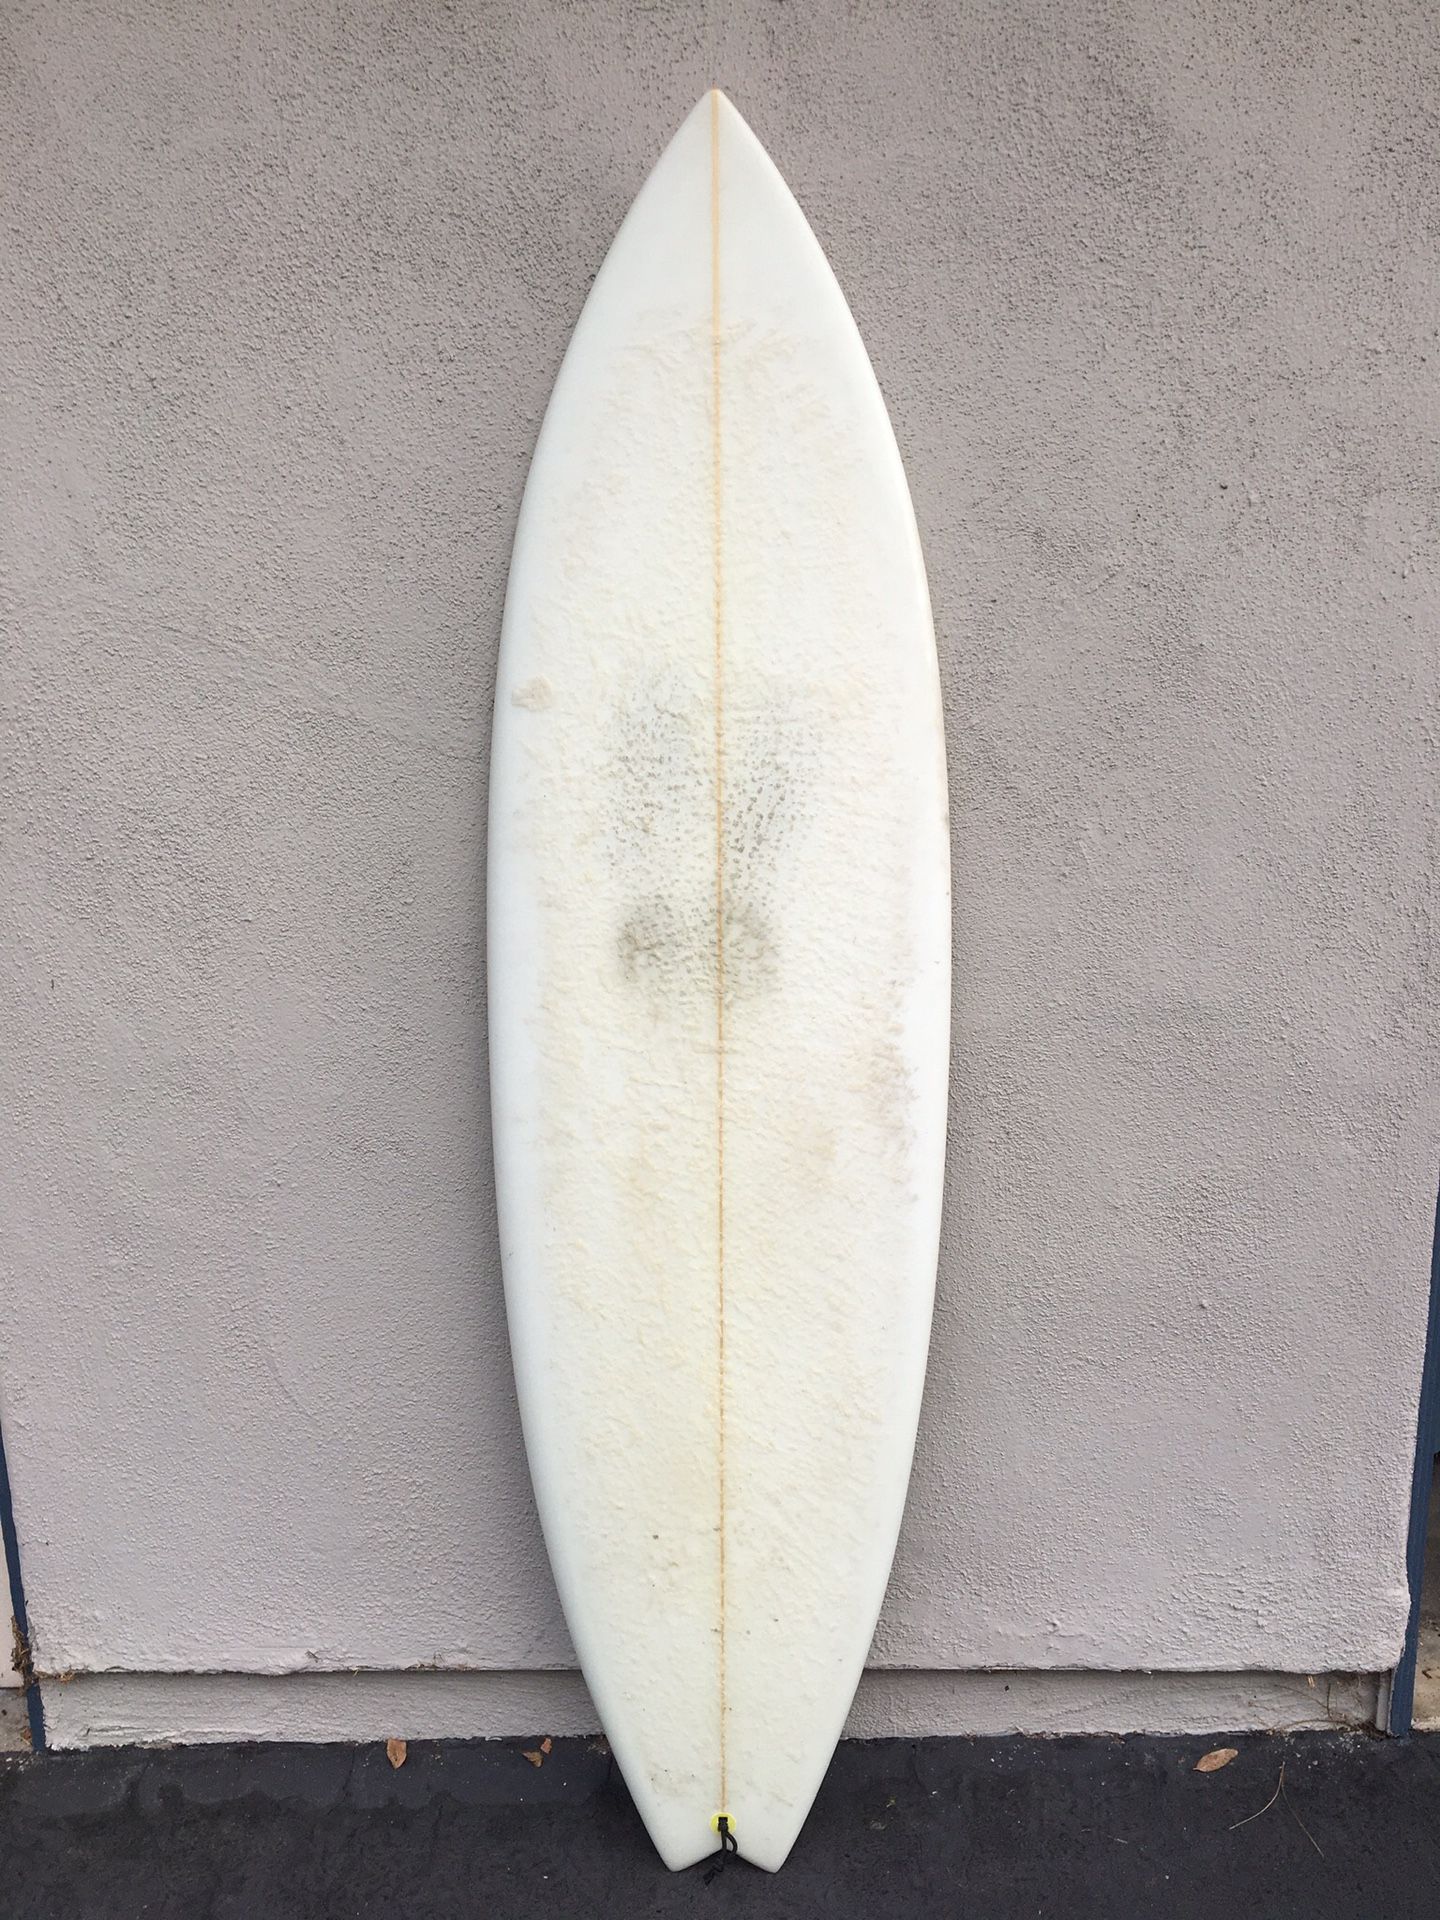 Single Fin Surfboard - 5’10”